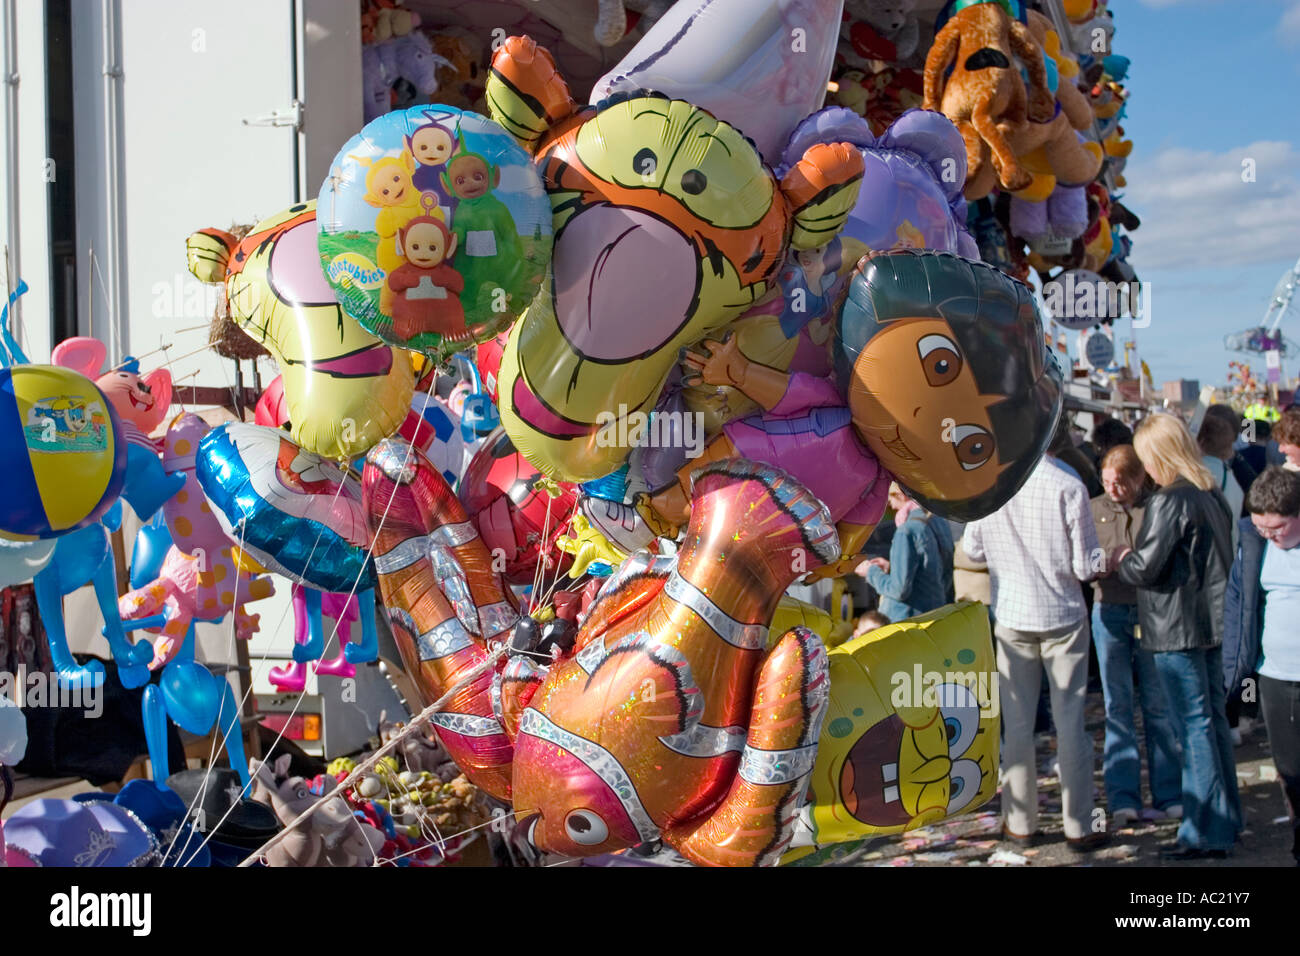 Hélium pour gonfler des ballons région Ath, Mons,Tournai